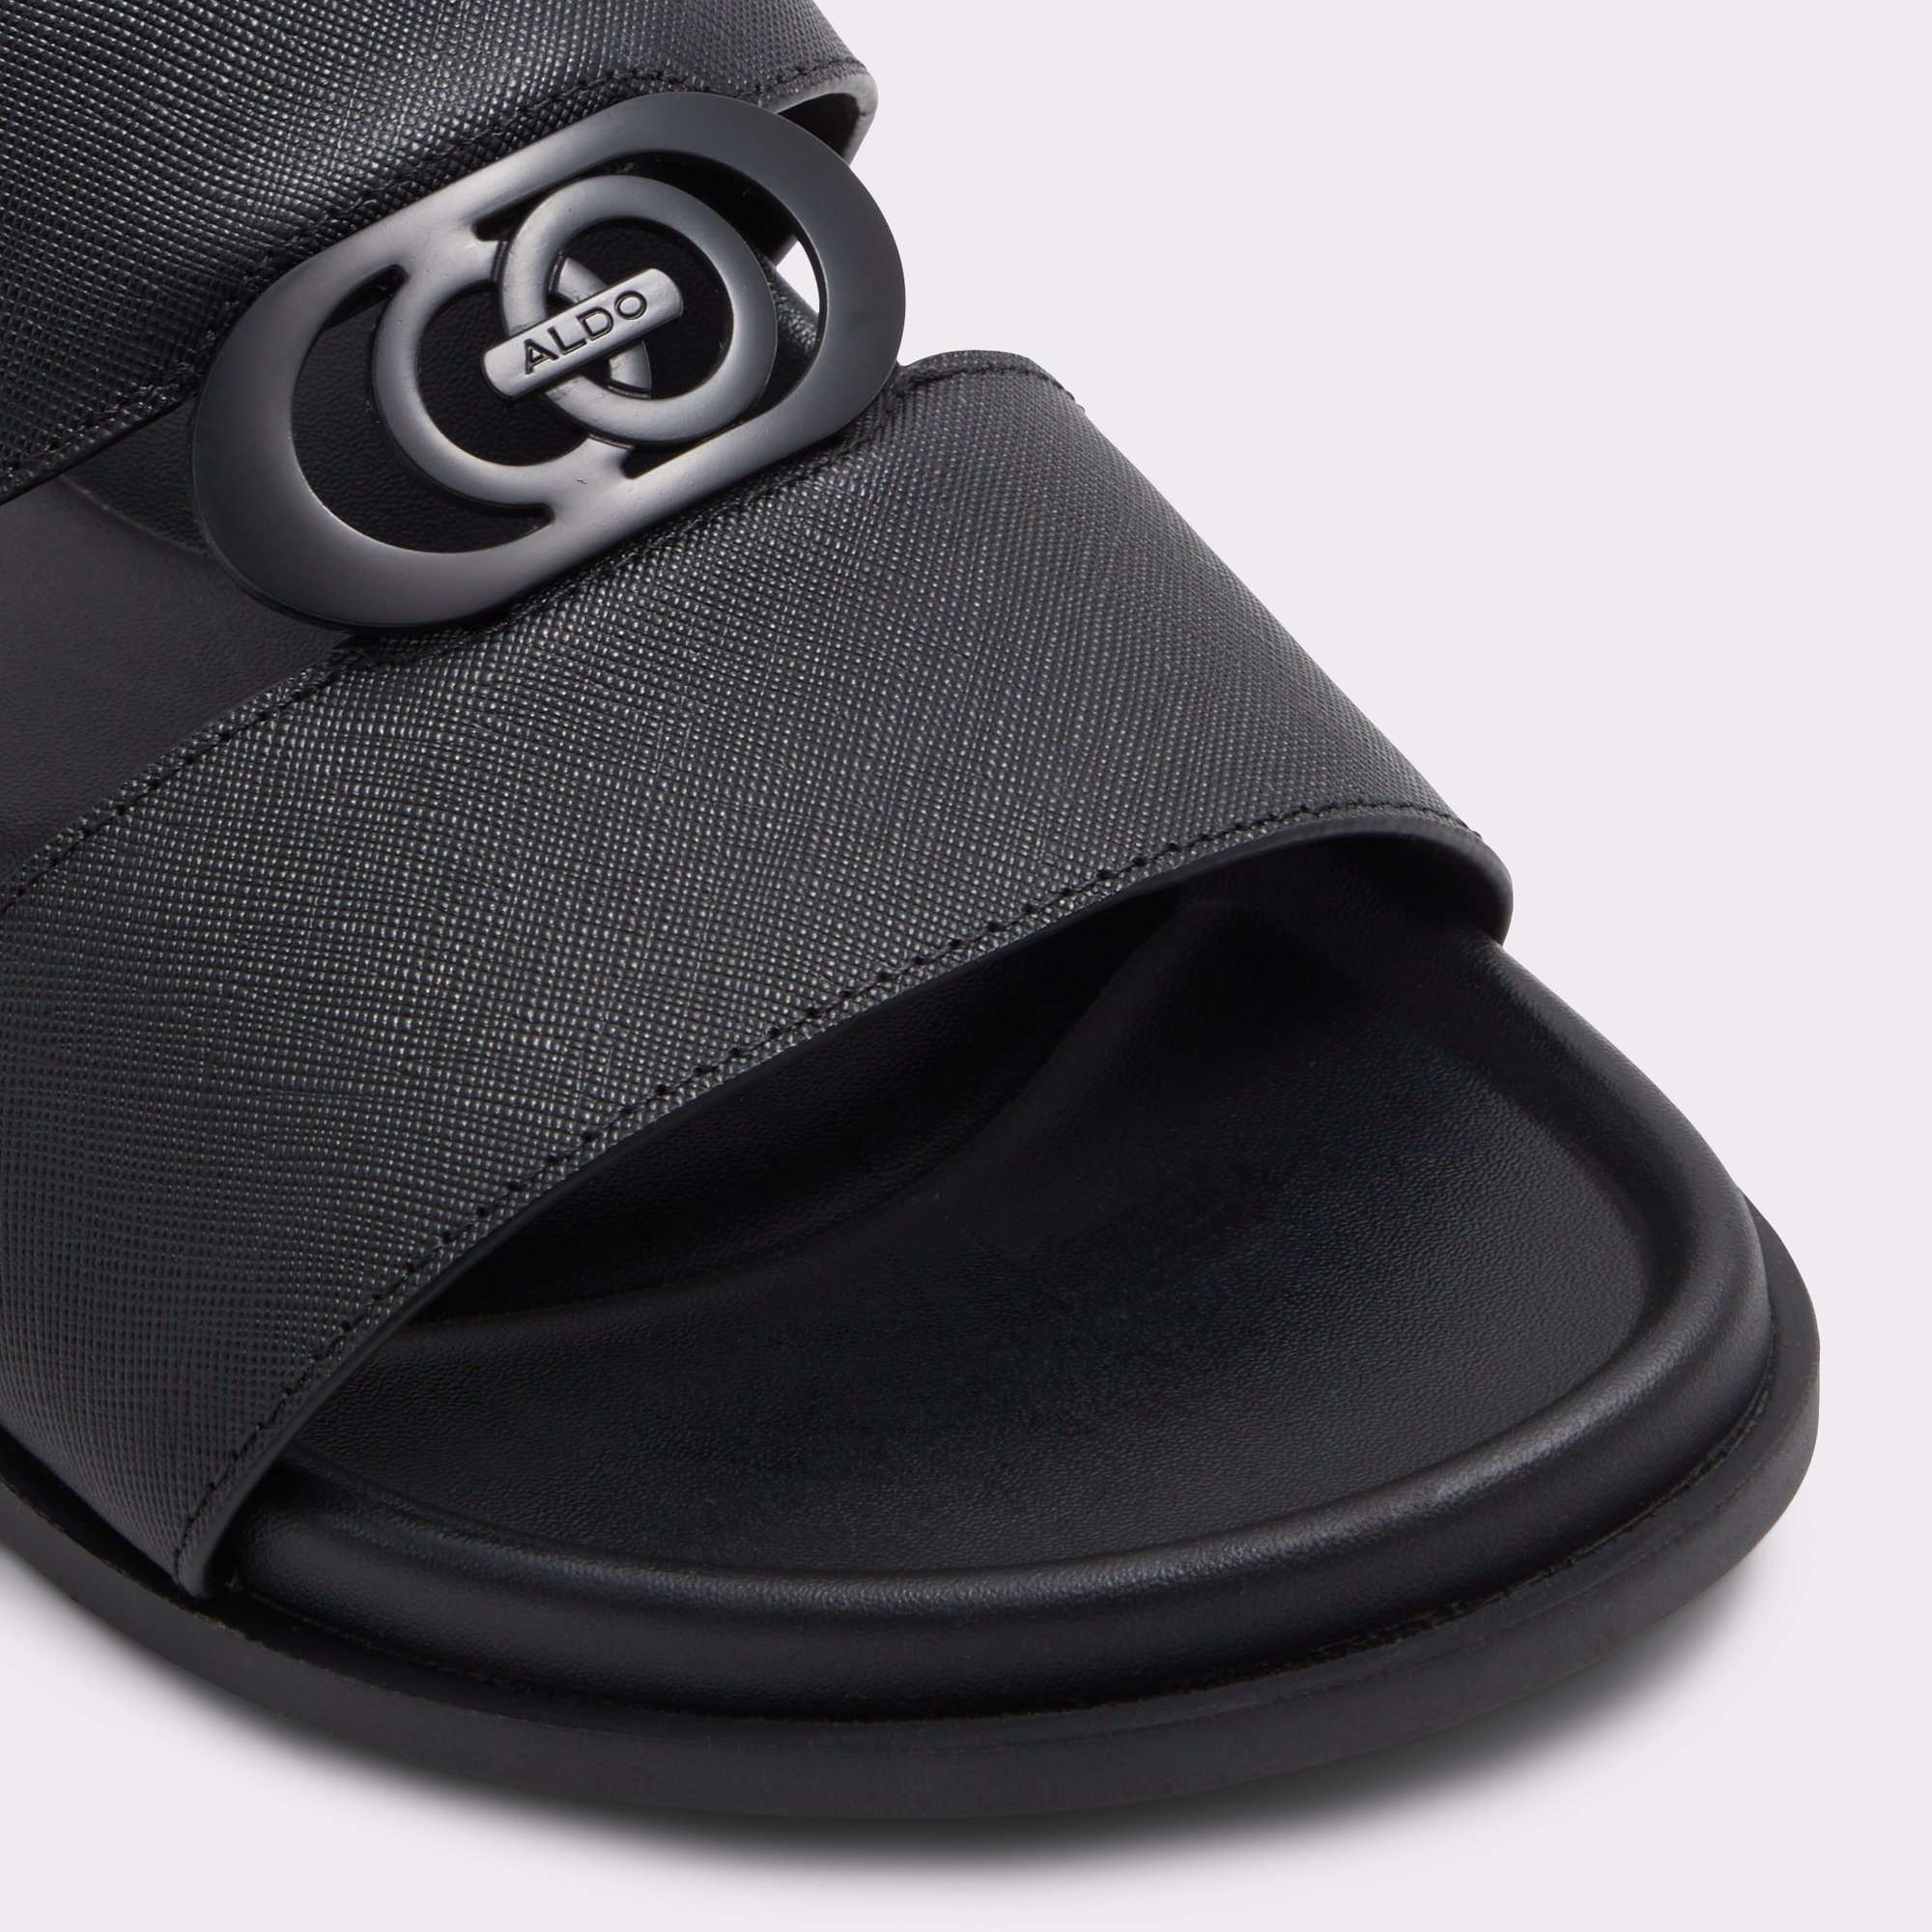 Reefside Black Men's Sandals & Slides | ALDO Canada